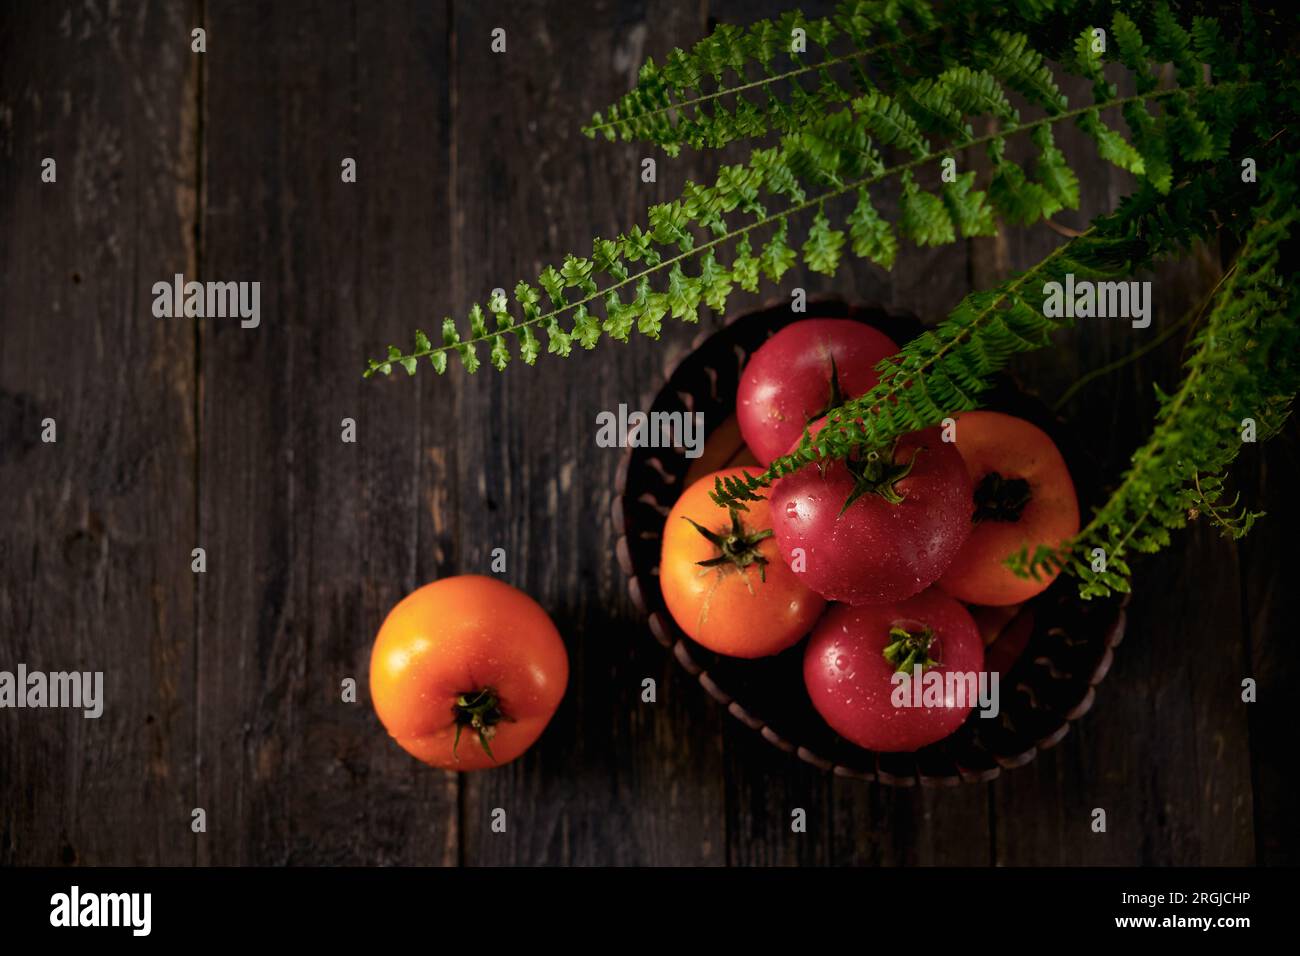 Capa superior de tomates con gotas de rocío en una cesta de madera en una mesa de madera con hojas de helecho Foto de stock